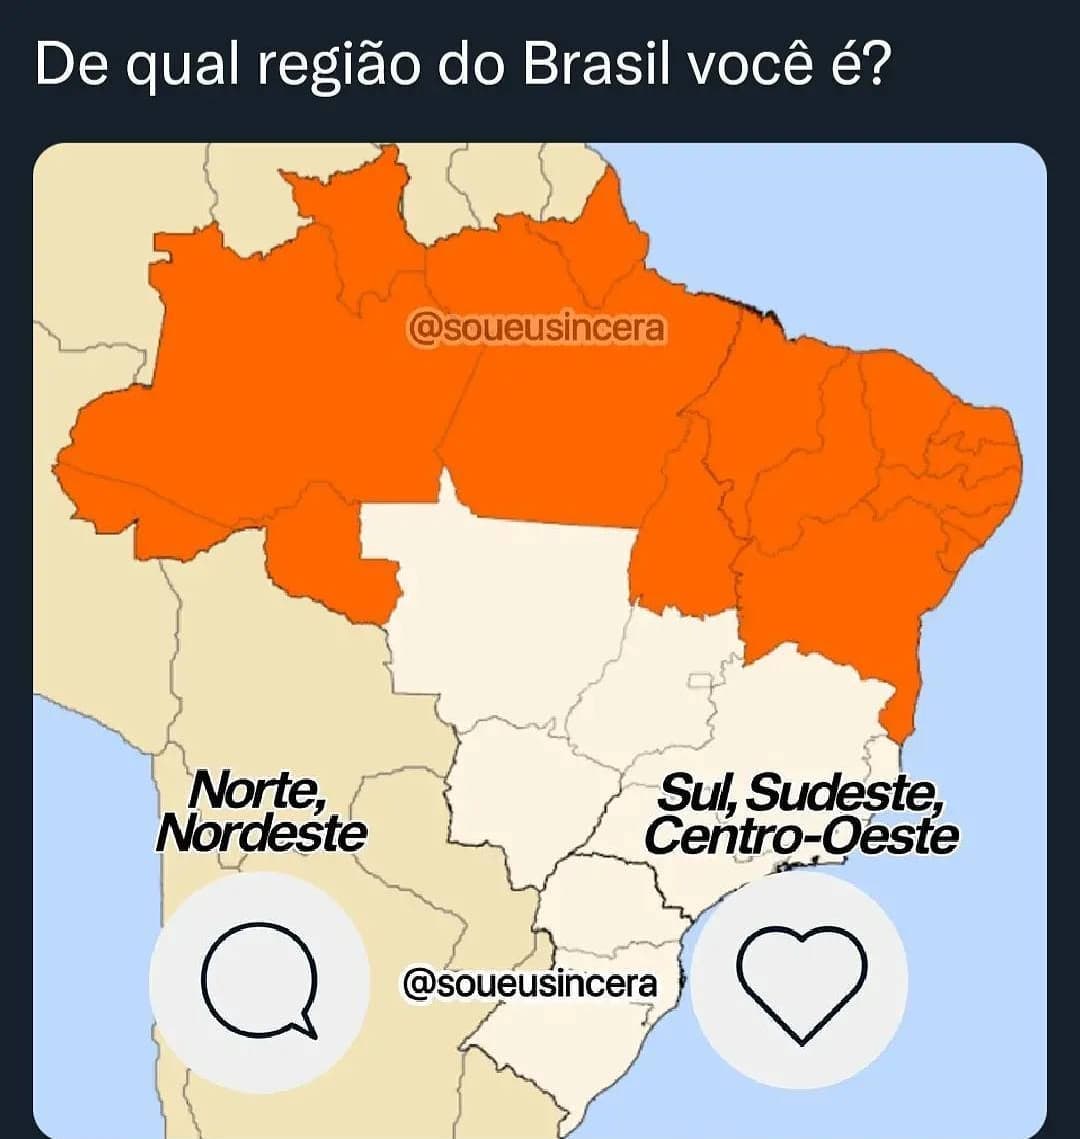 De qual região do Brasil você é? Norte, Nordeste Sul, Sudeste, Centro-Oeste.